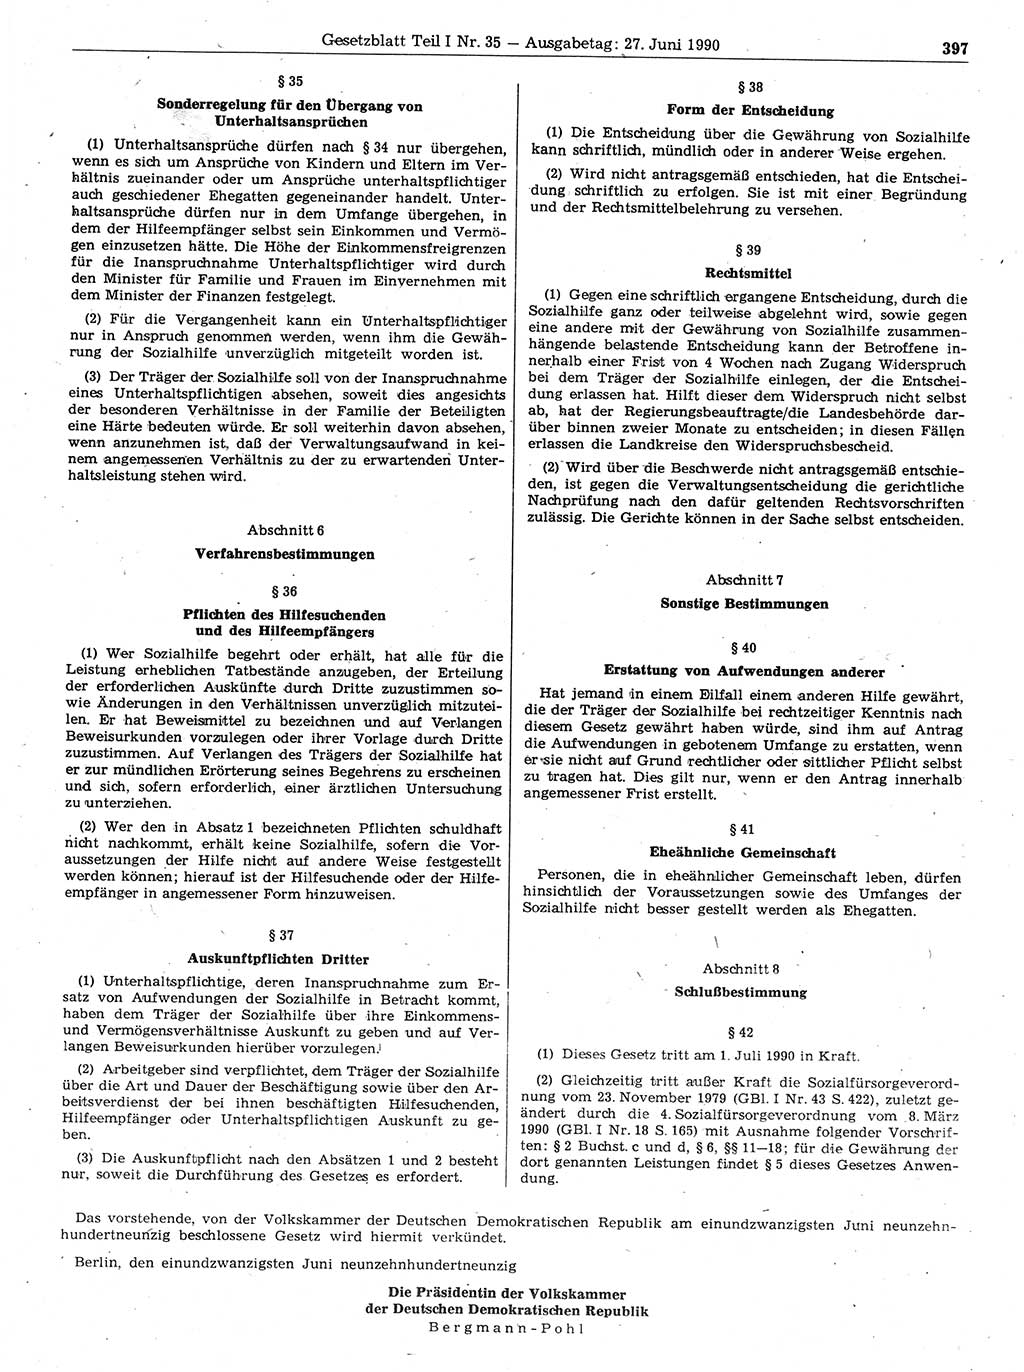 Gesetzblatt (GBl.) der Deutschen Demokratischen Republik (DDR) Teil Ⅰ 1990, Seite 397 (GBl. DDR Ⅰ 1990, S. 397)